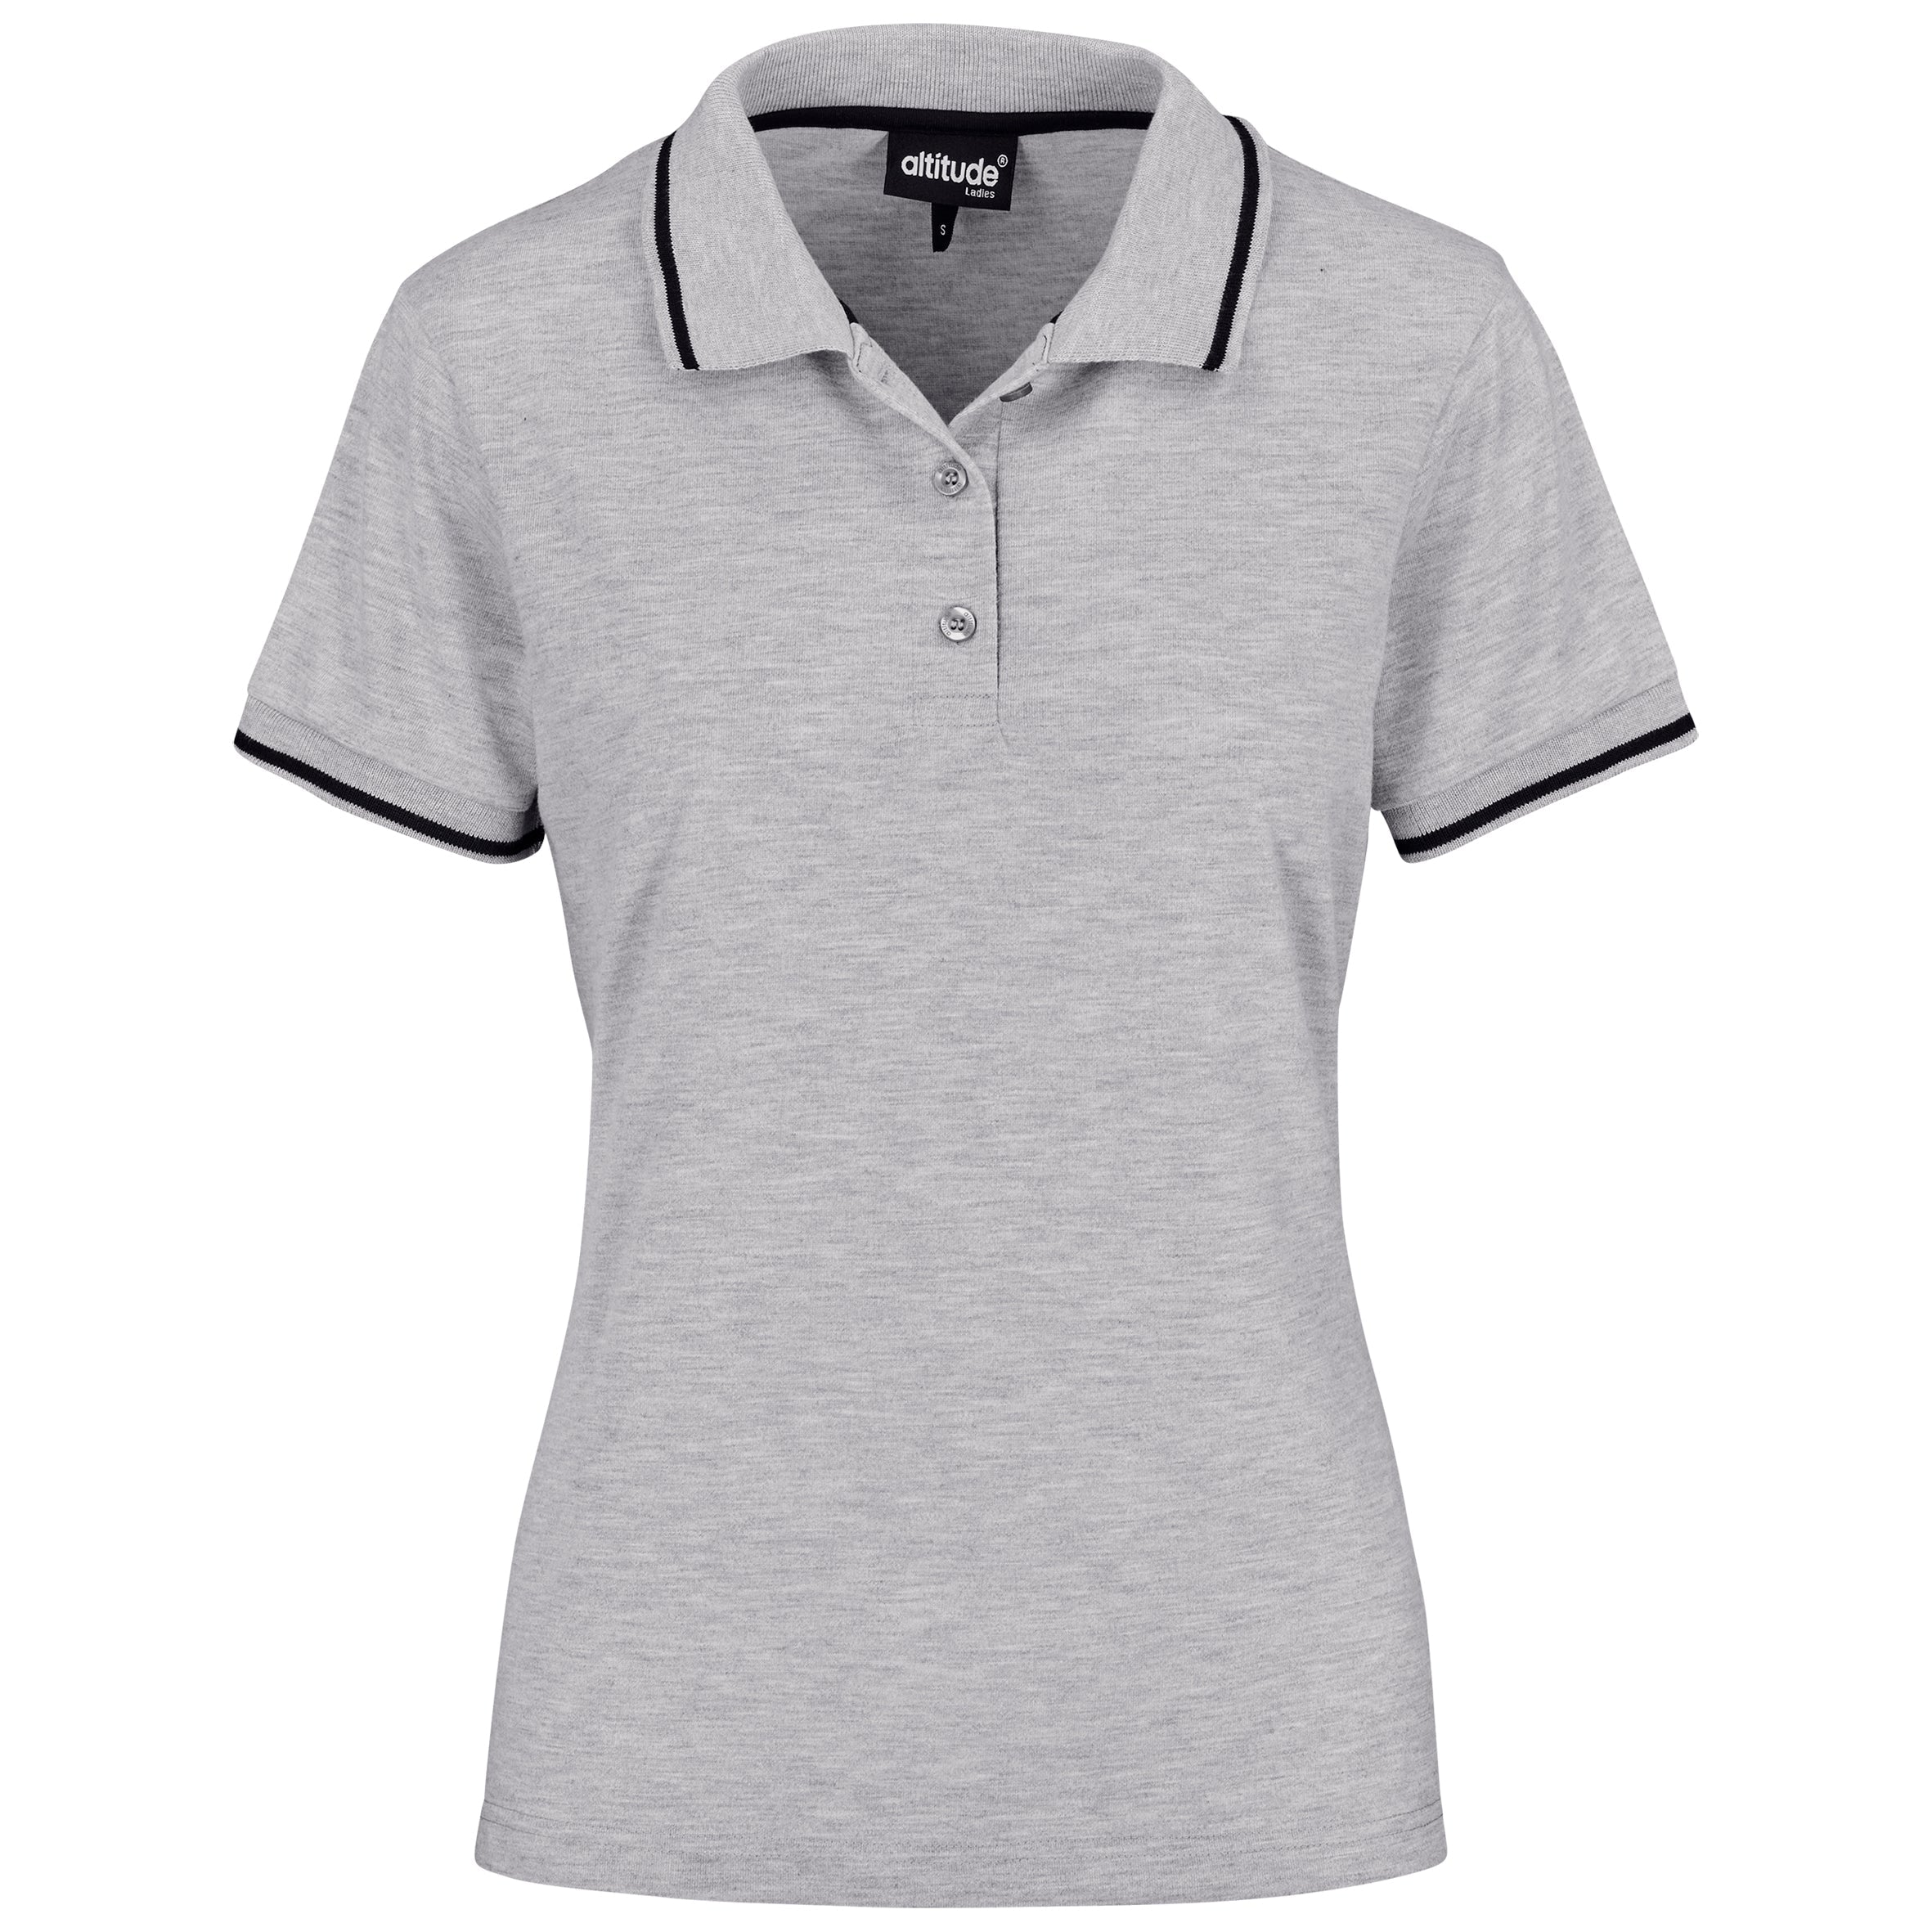 Ladies Reward Golf Shirt L / Grey / GY